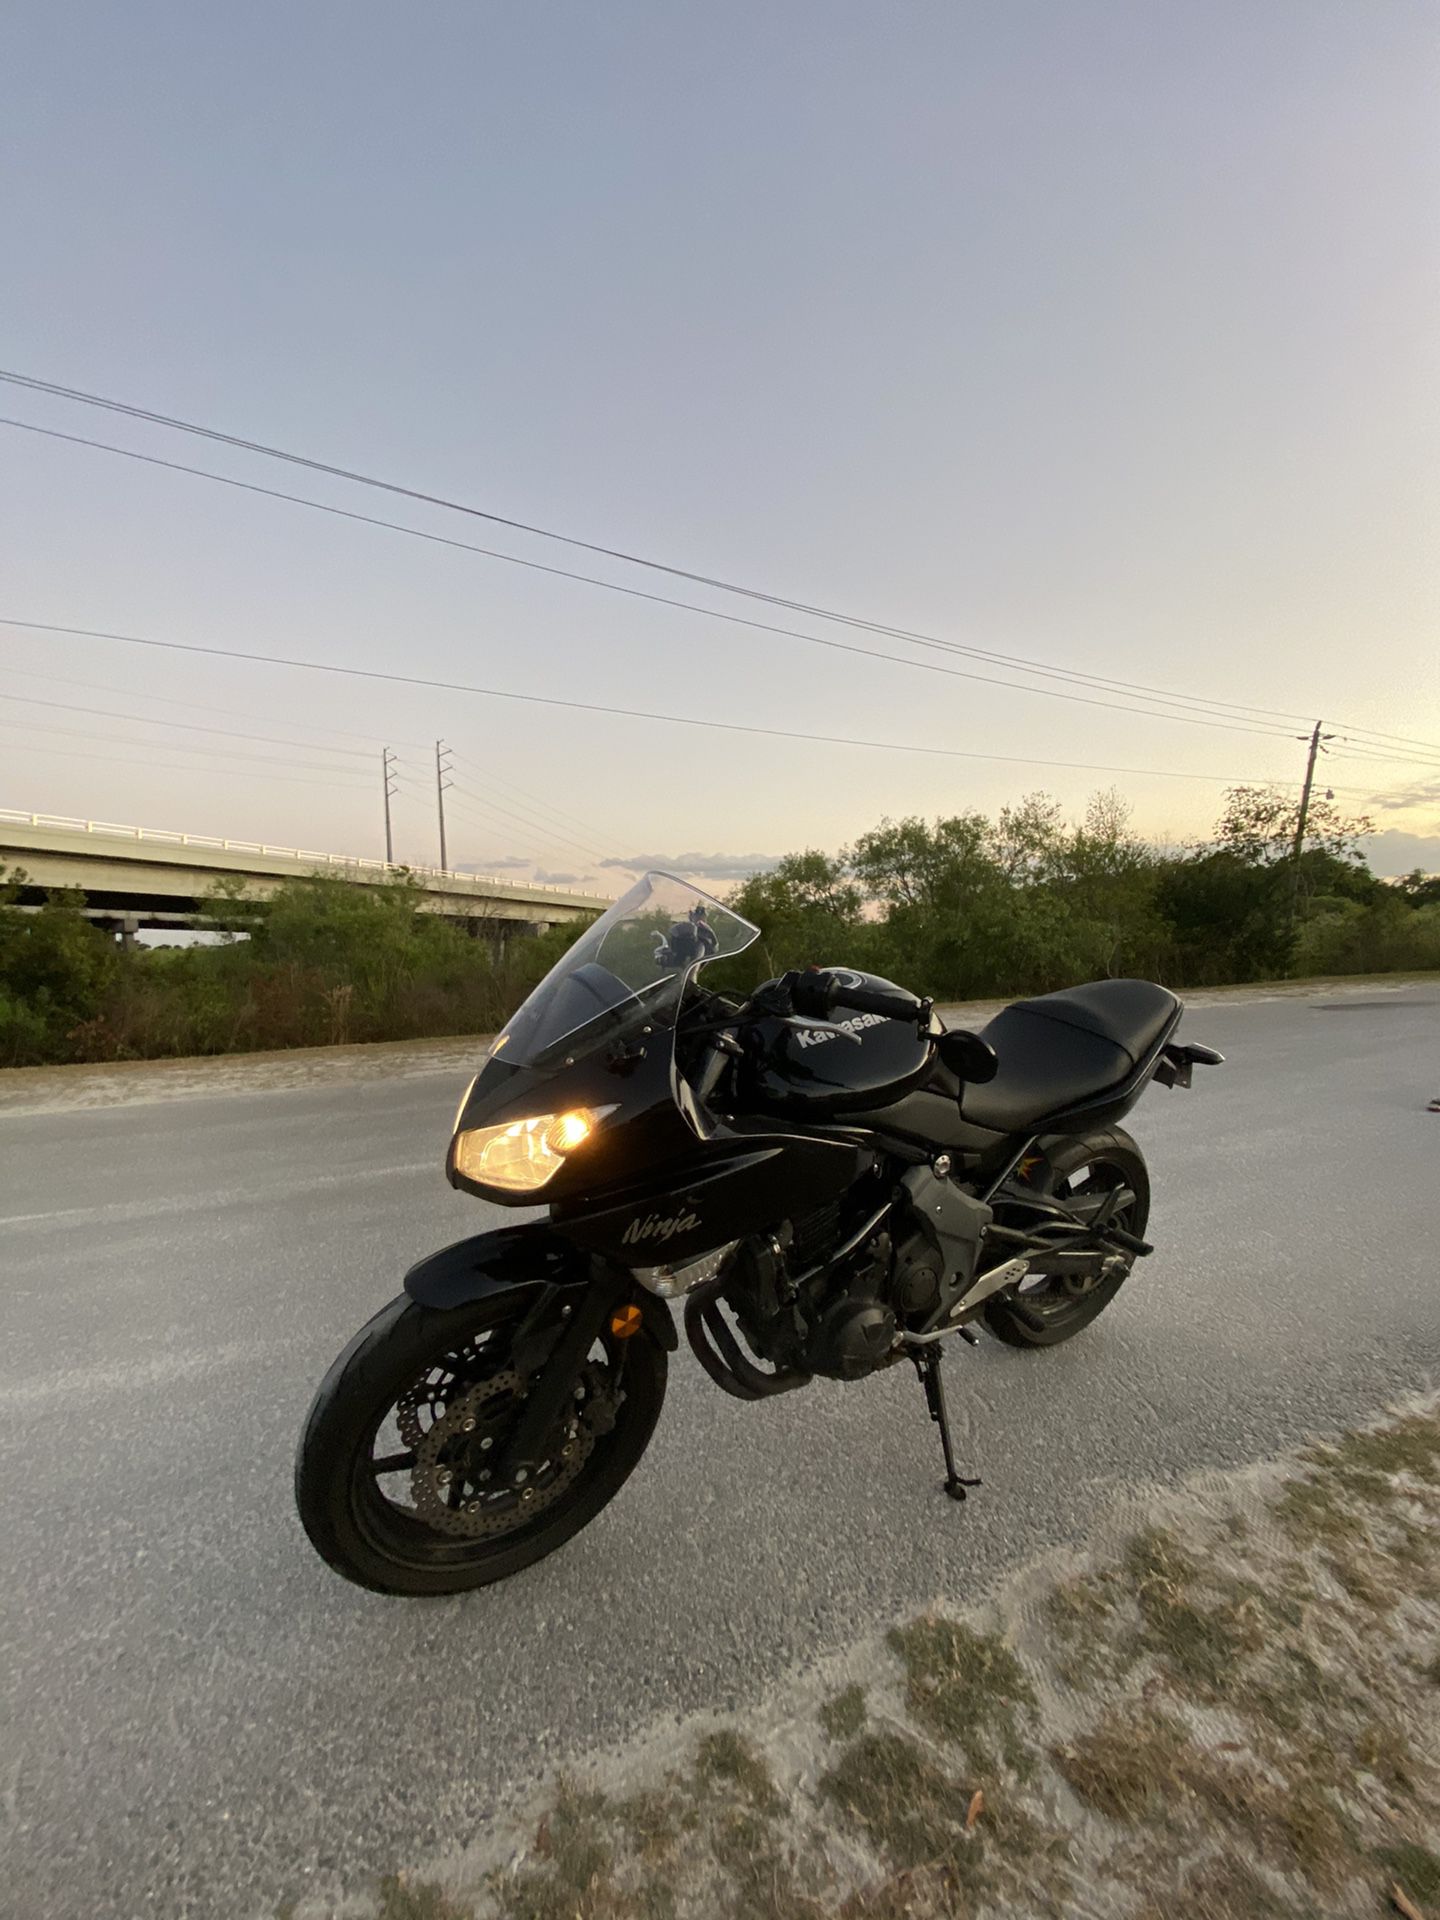 Kawasaki Motorcycle 650R